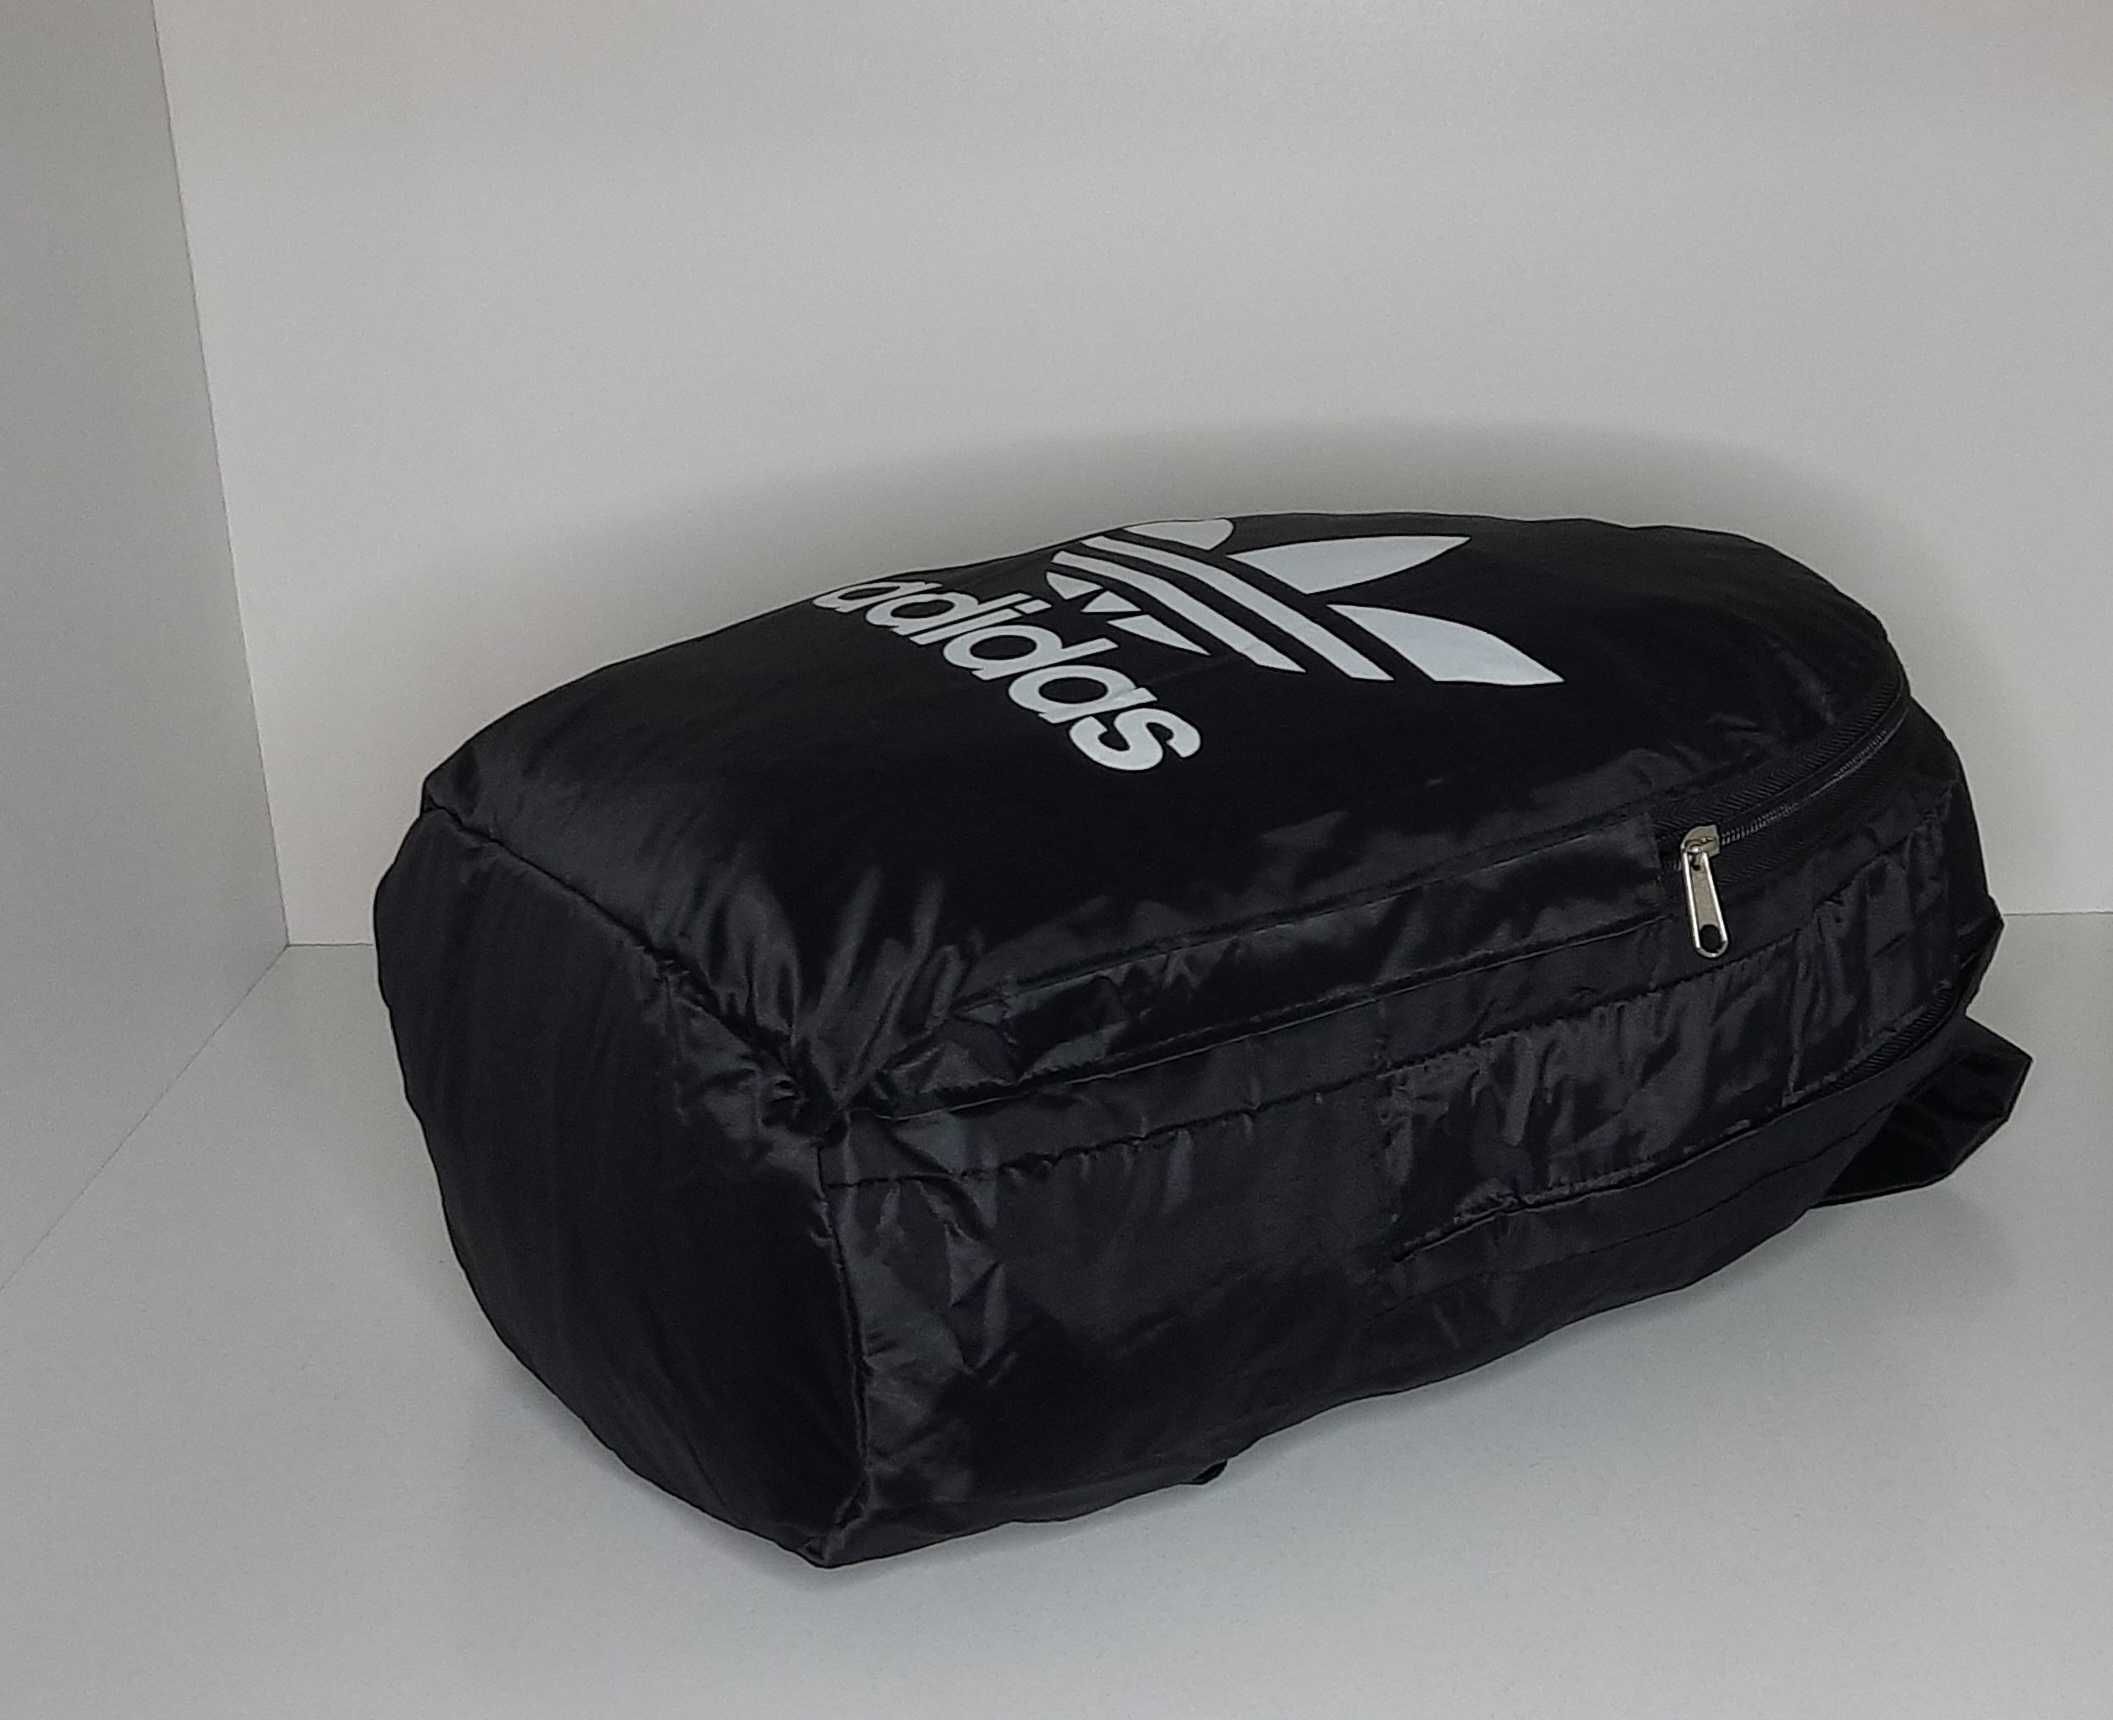 Спортивный рюкзак Adidas чёрный. Новый.